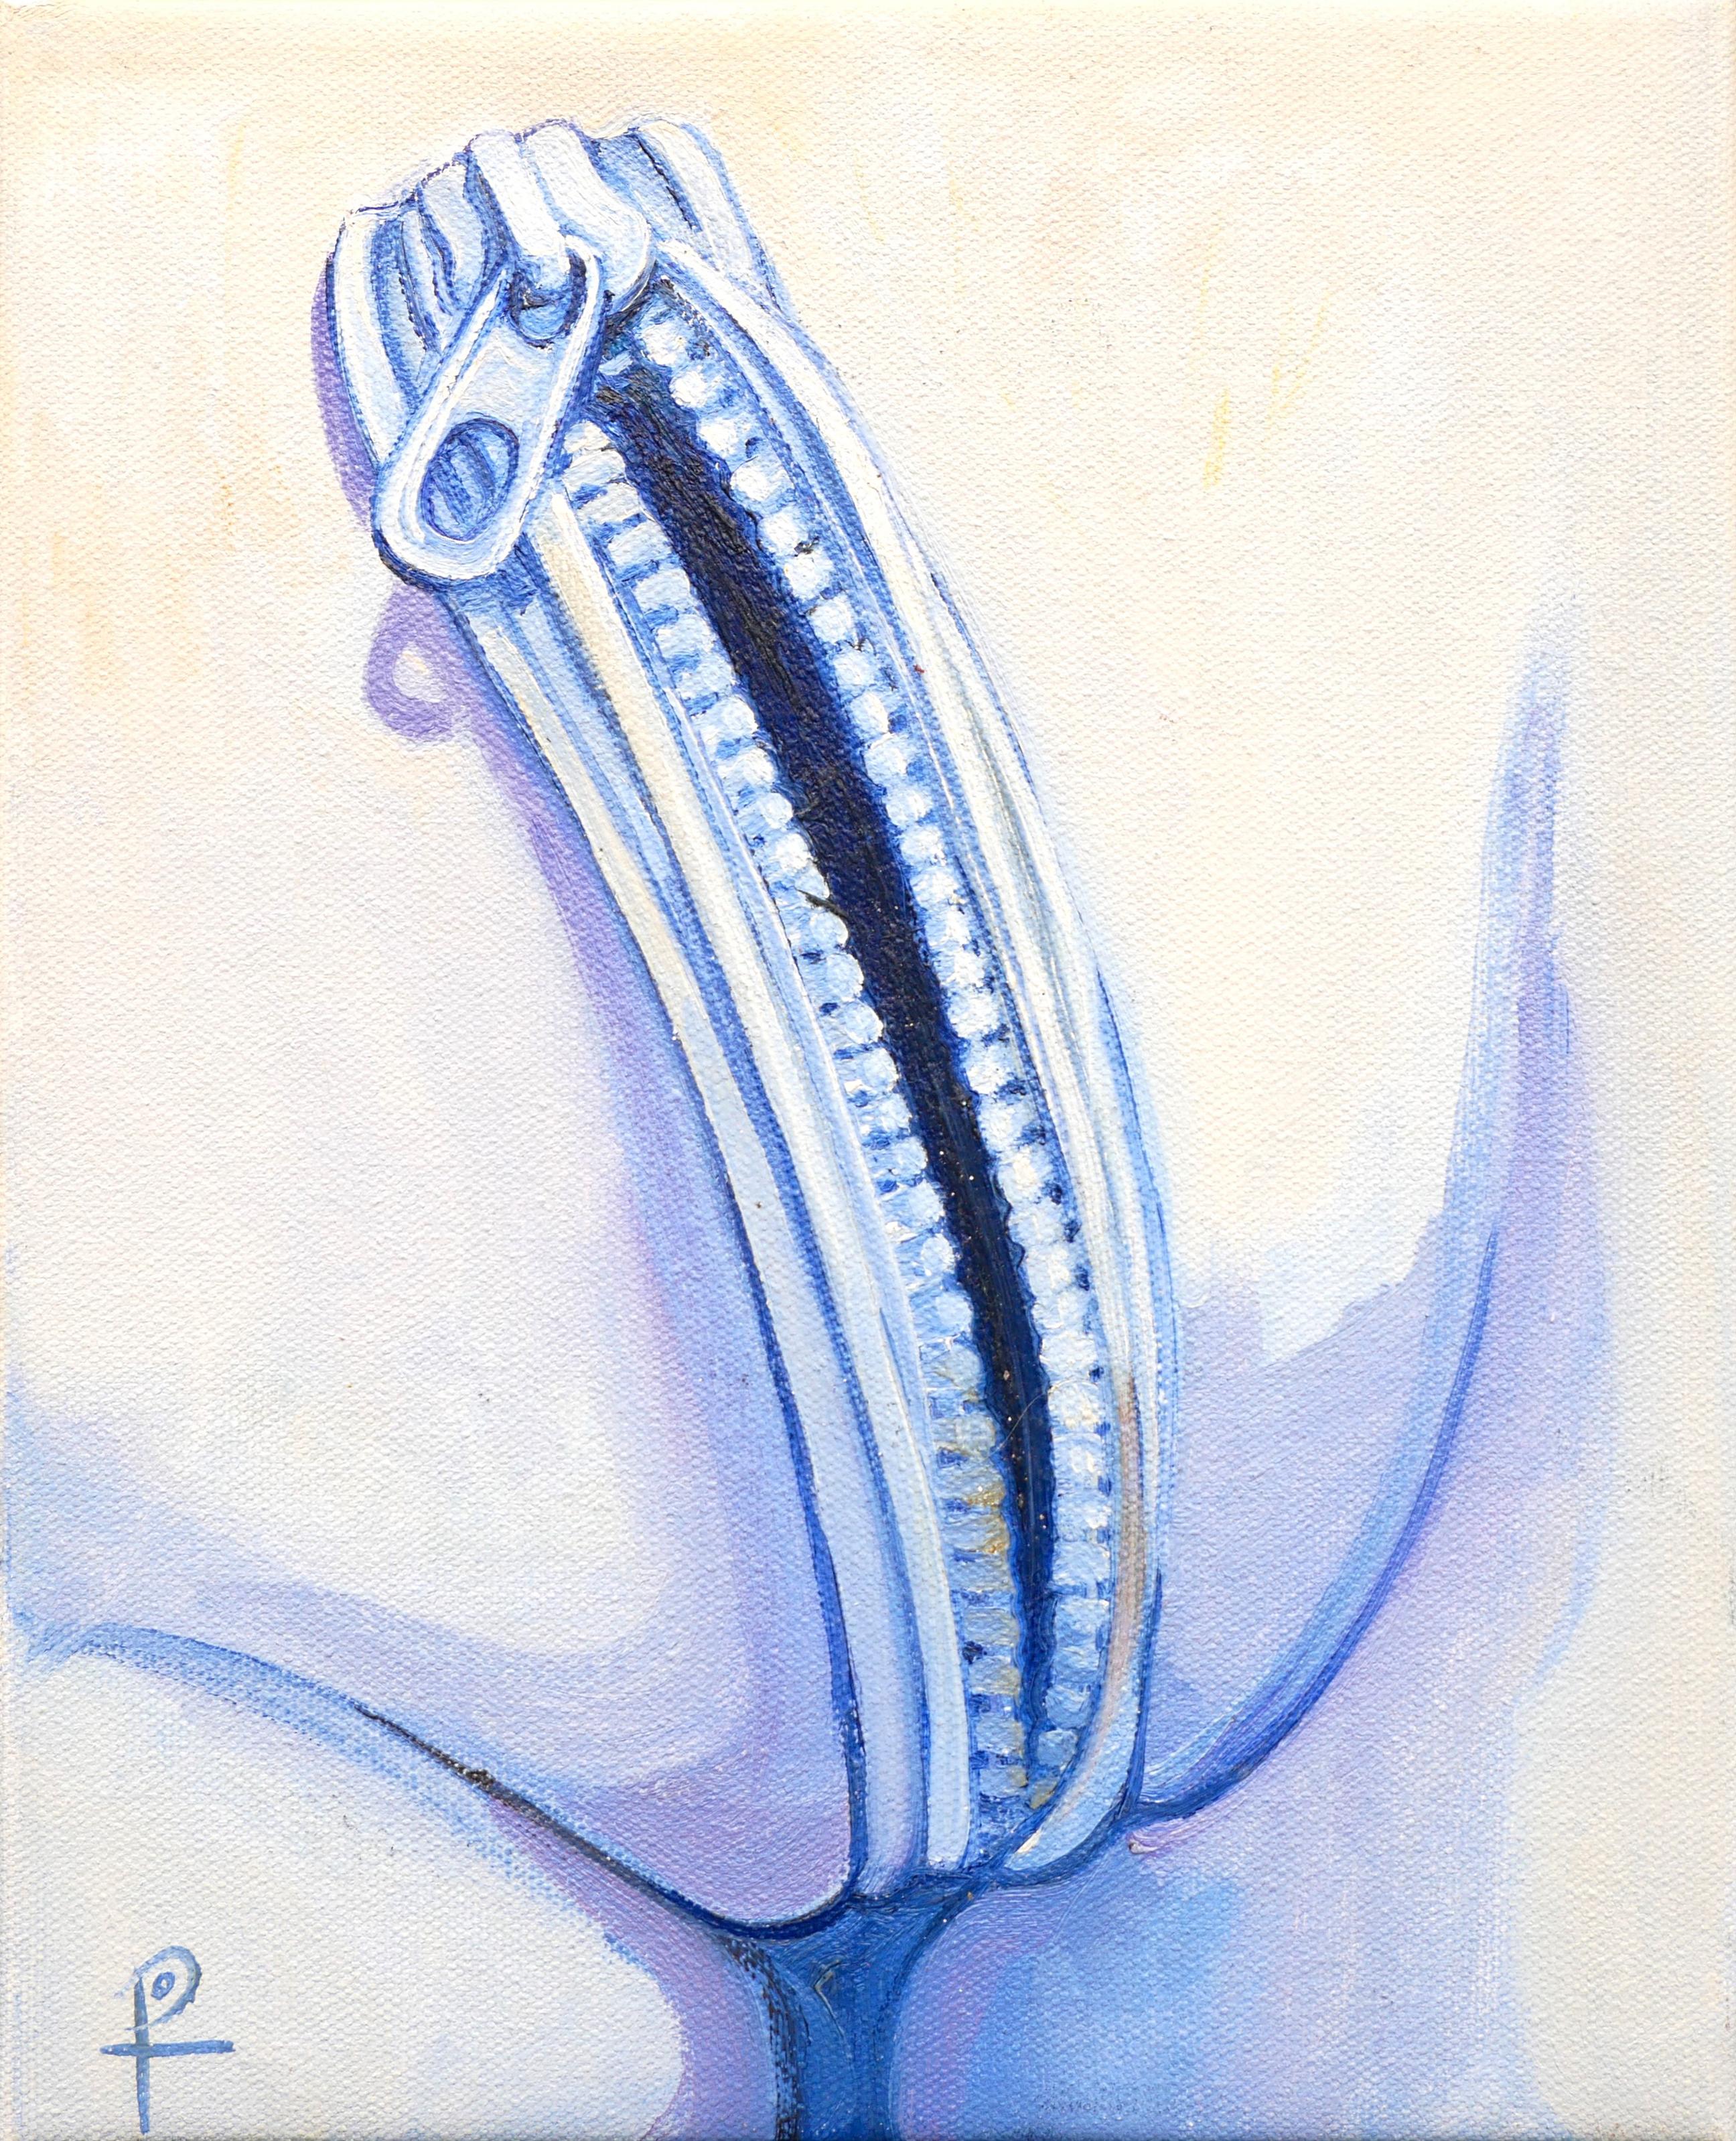 Figurative Painting Henry David Potwin - "Unzipped" Contemporain Pastel Bleu Ton Risqué Peinture Surréaliste